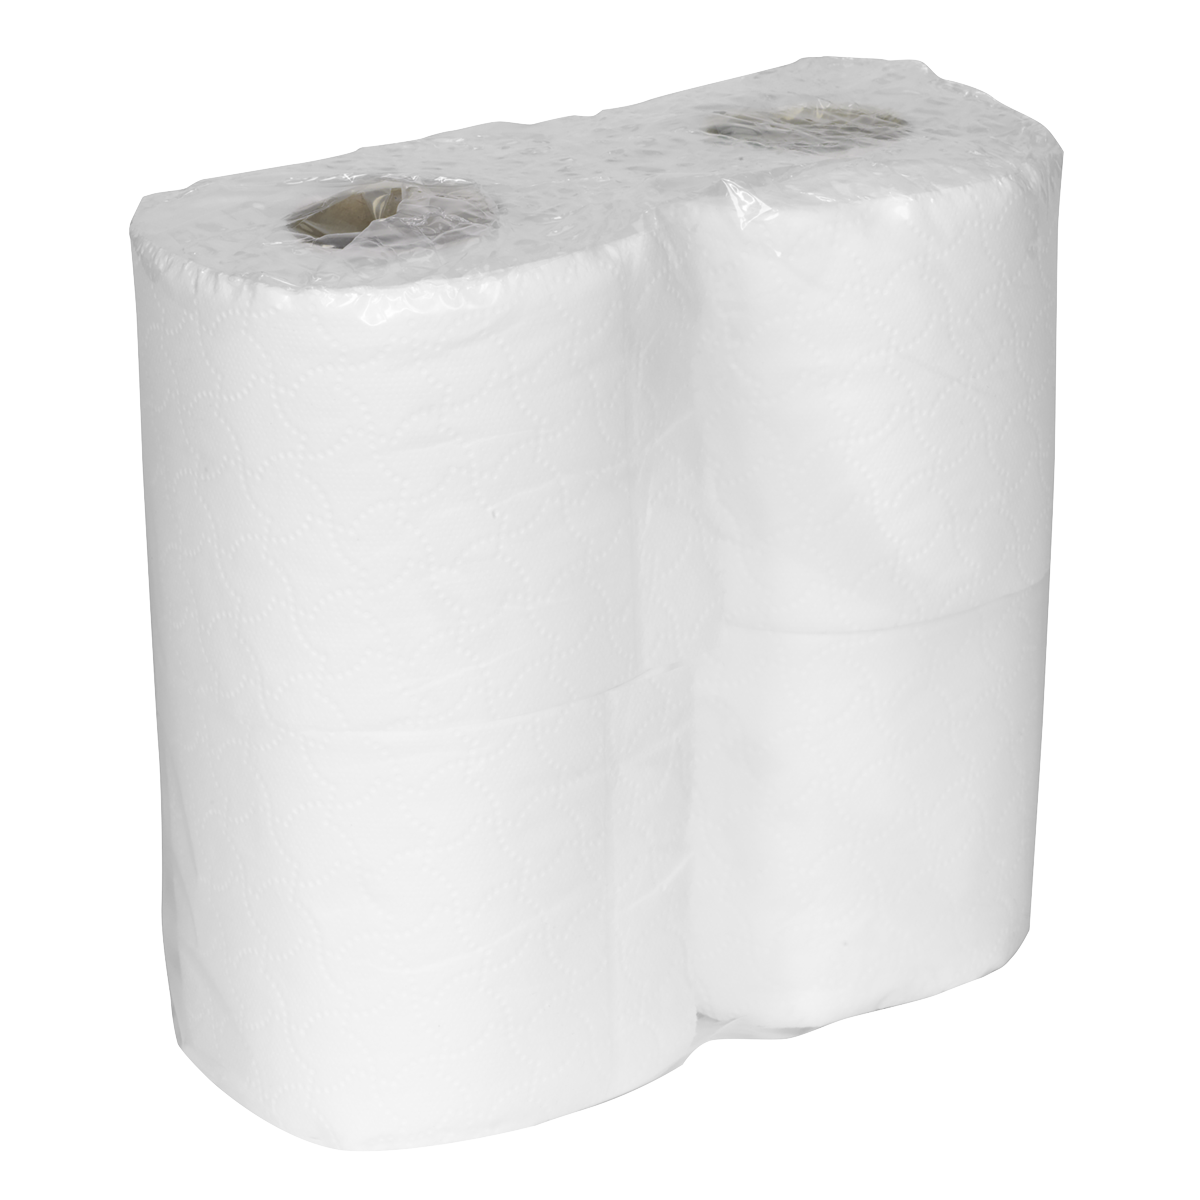 Plain White Toilet Roll - Pack of 4 x 10 (40 Rolls)